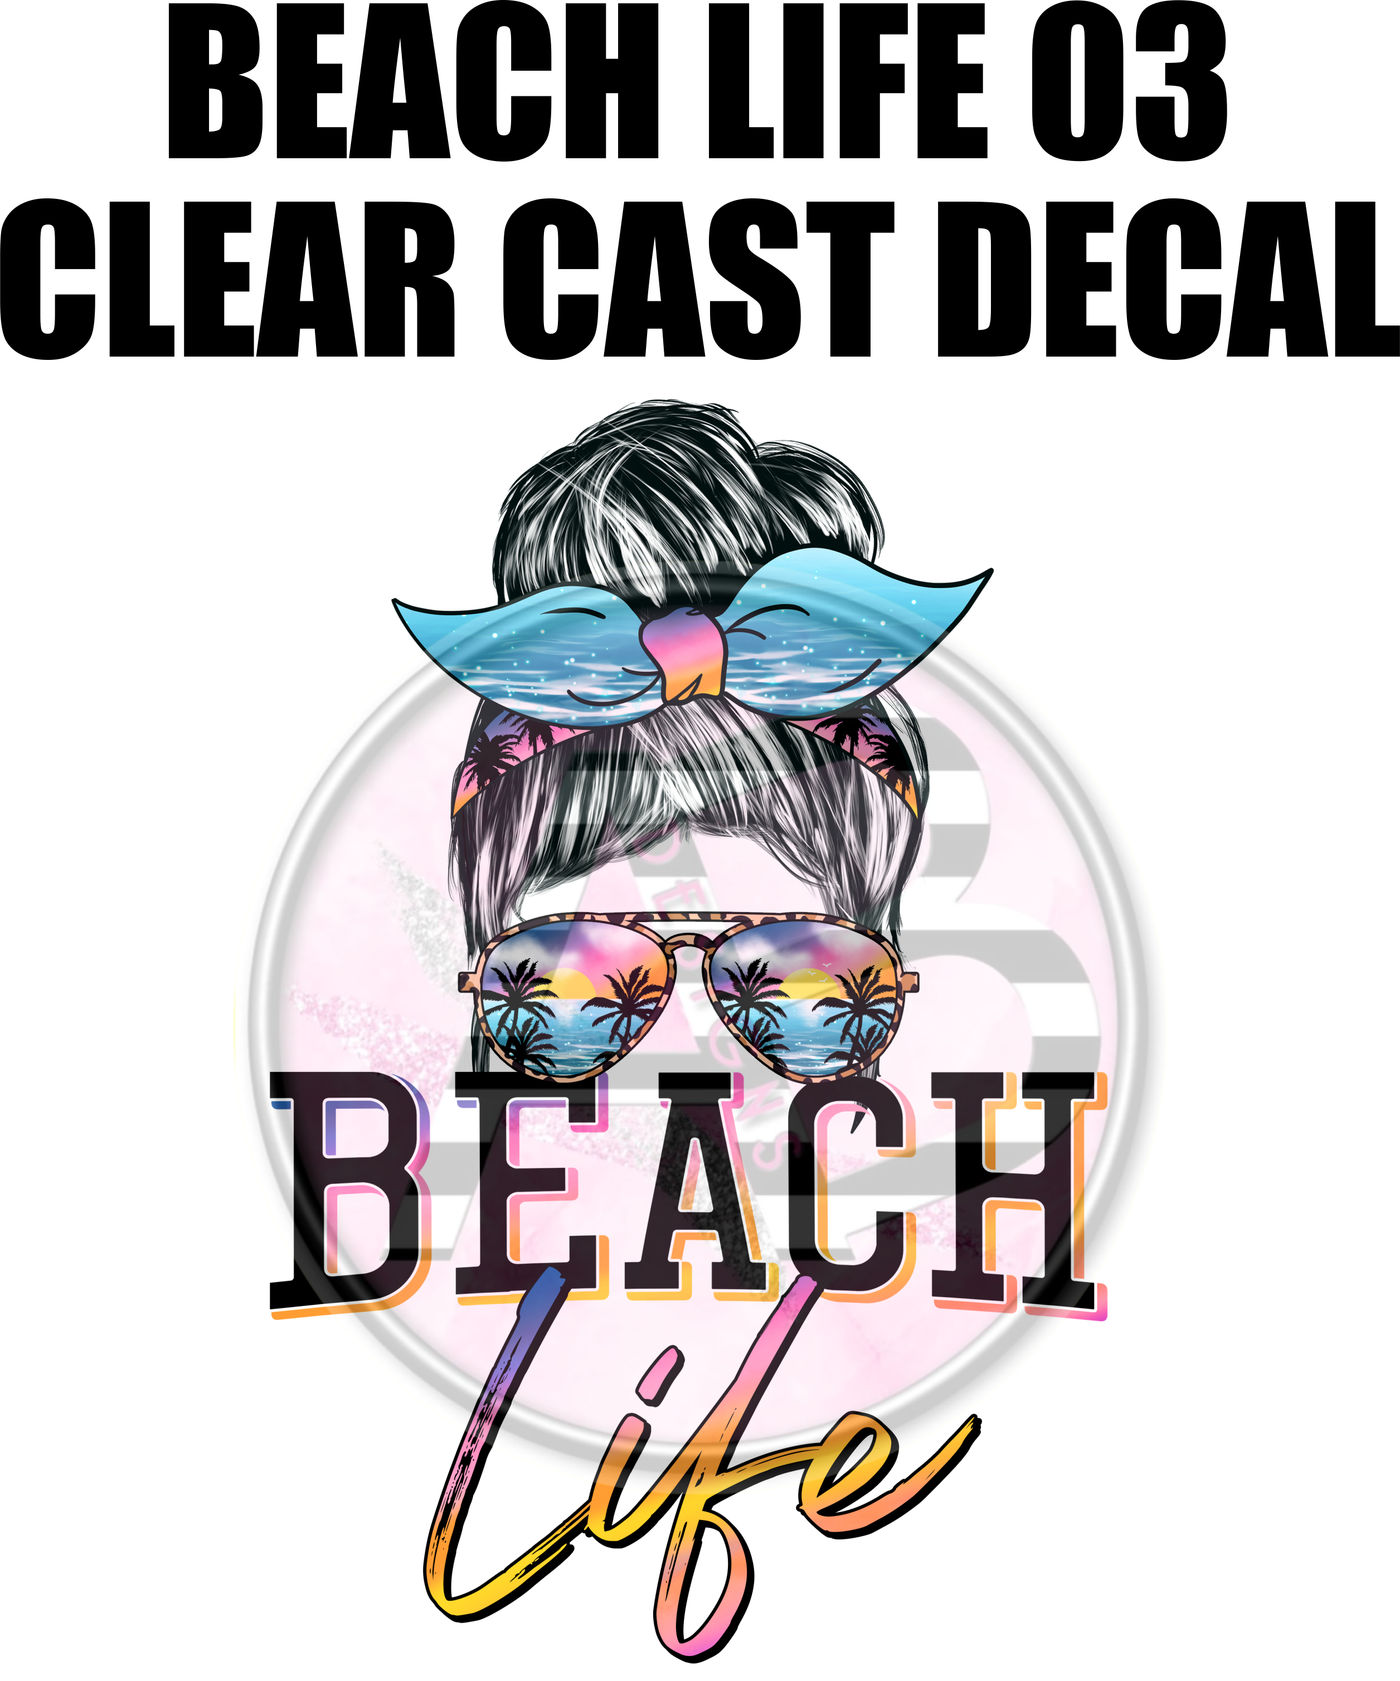 Beach Life 03 - Clear Cast Decal